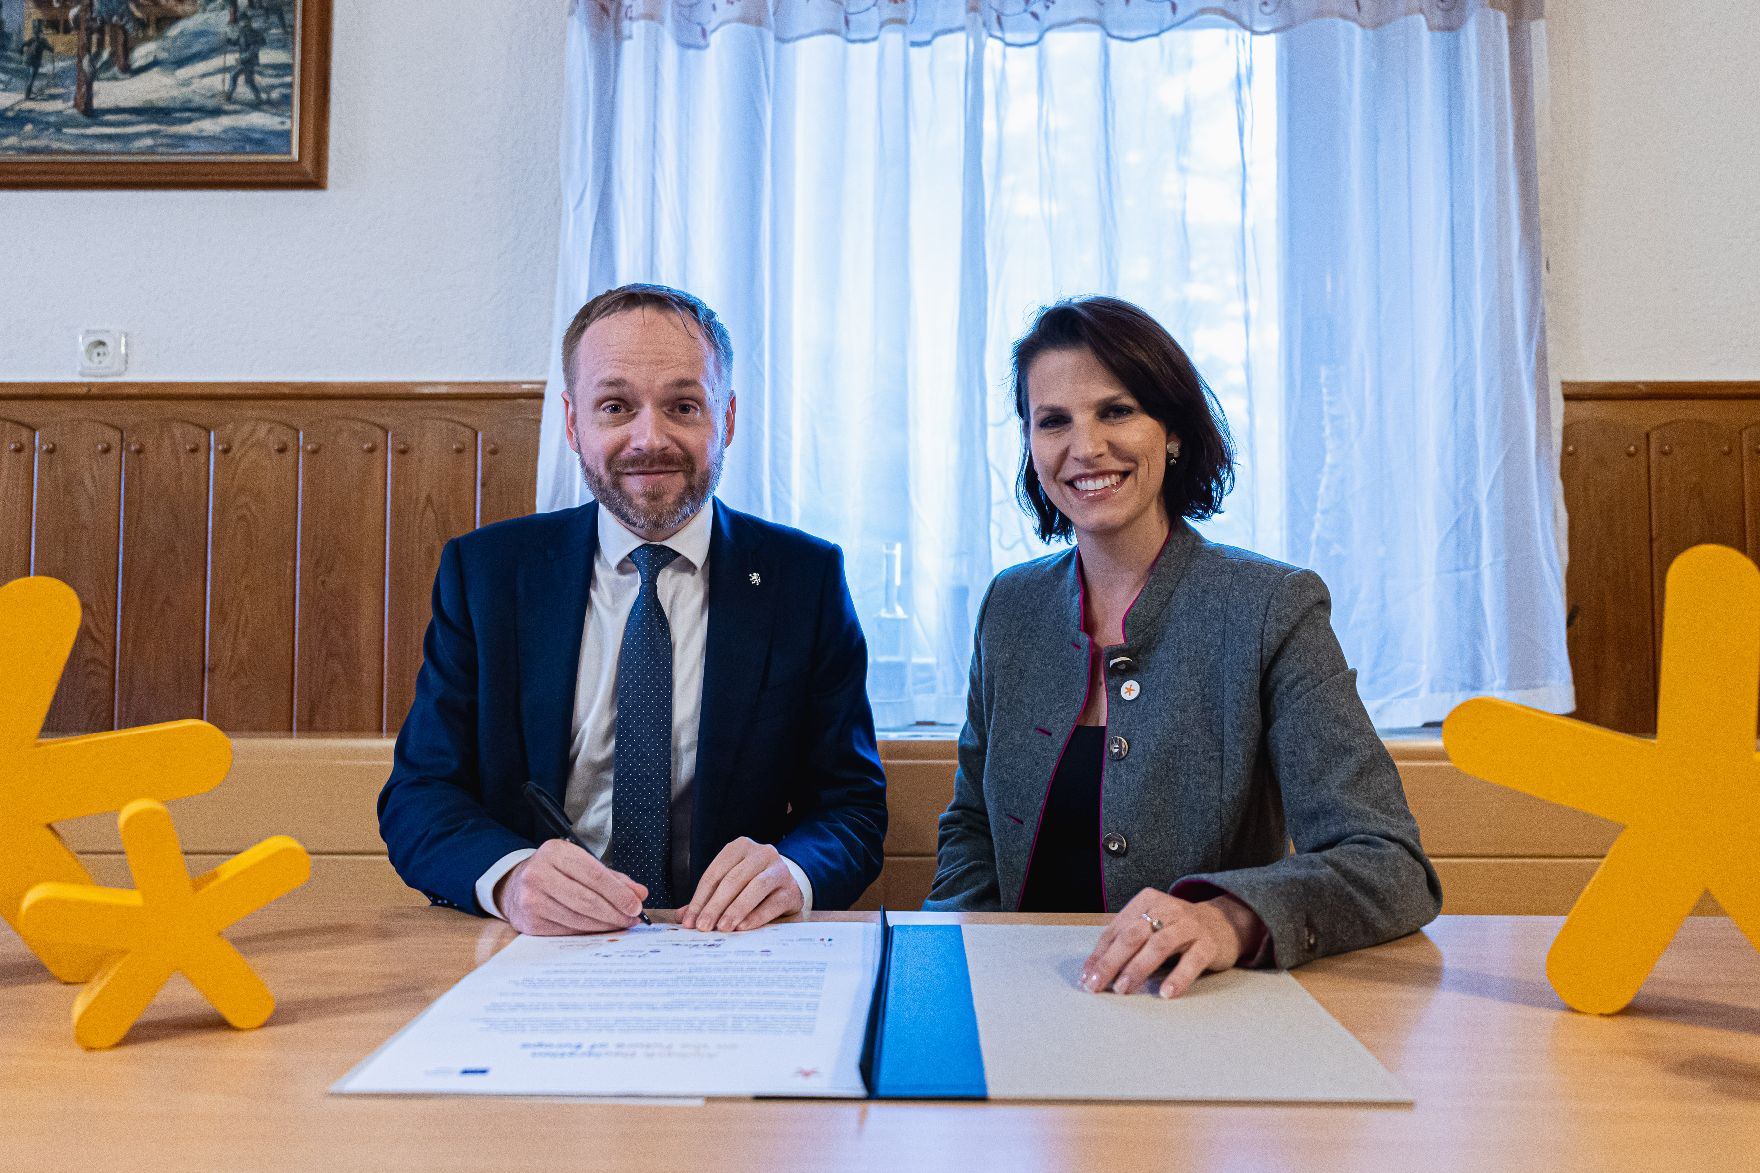 Am 5. Oktober 2021 reiste Bundesministerin Karoline Edtstadler (r.) zu einem Arbeitsbesuch nach Bayern. Im Bild mit dem tschechischen Außenminister Jakub Kulhánek (l.) beim Unterzeichnung der Alpbach-Deklaration.